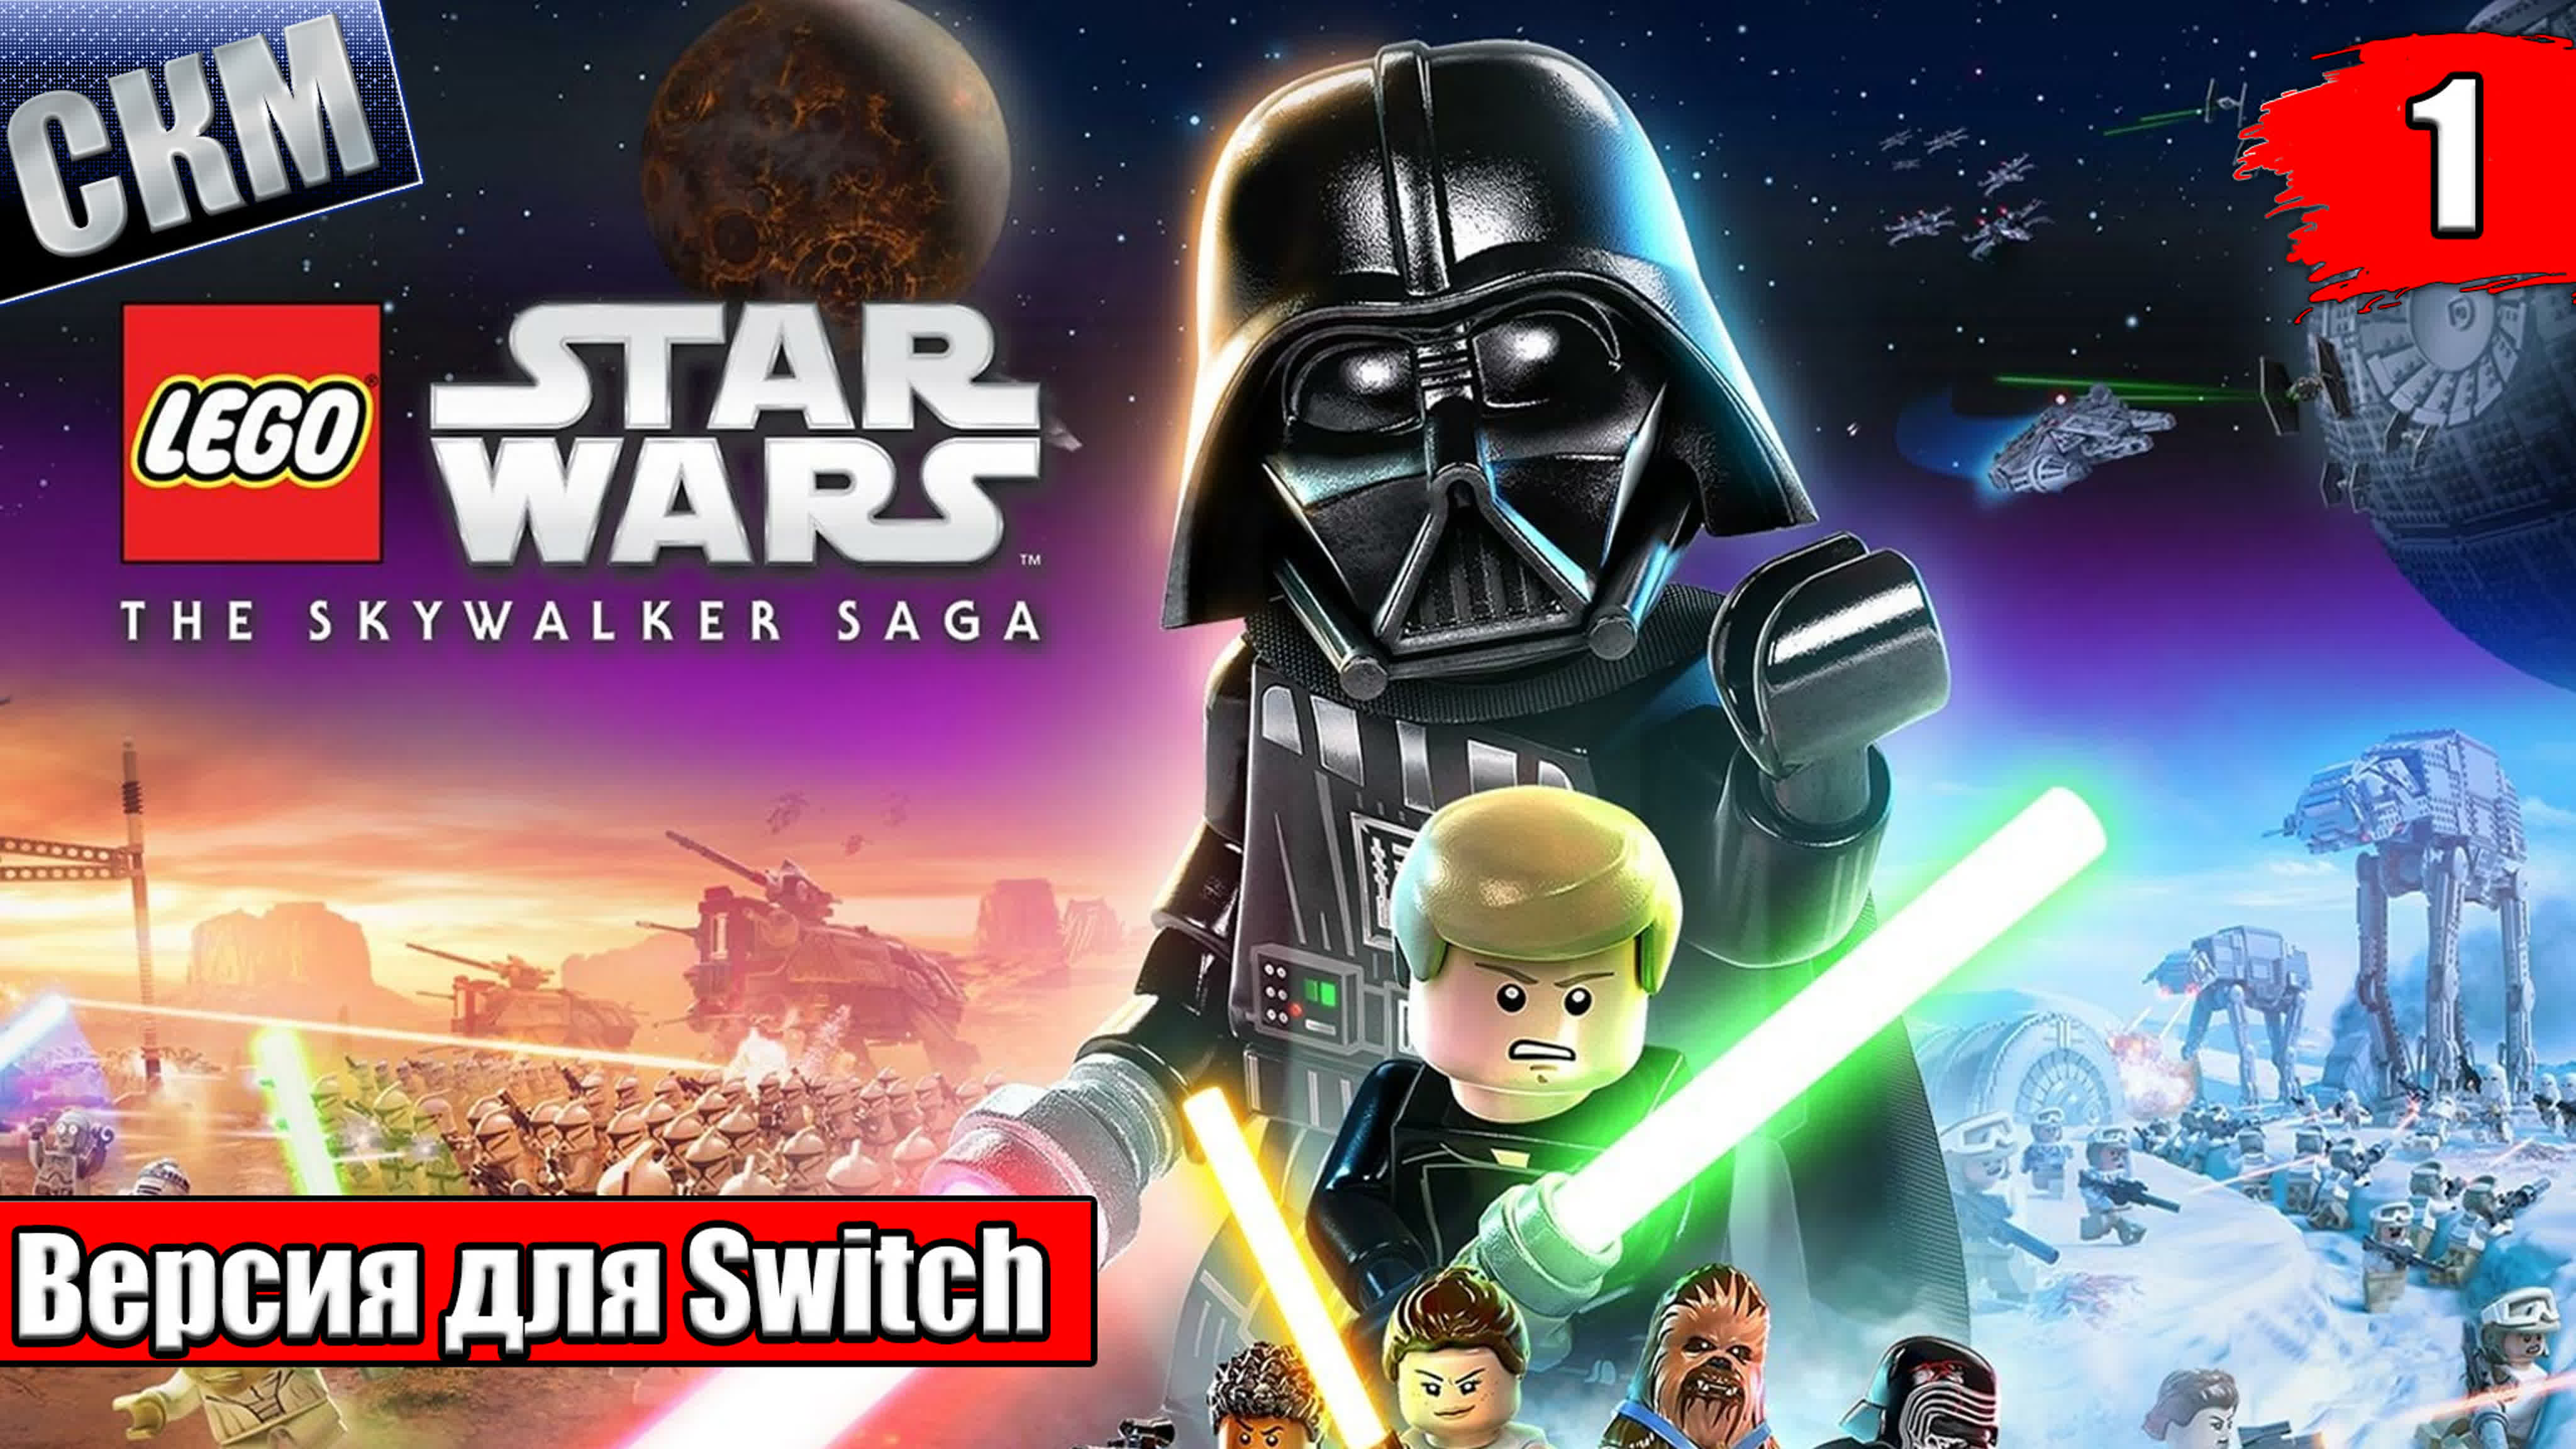 LEGO Star Wars The Skywalker Saga (PC) 4K